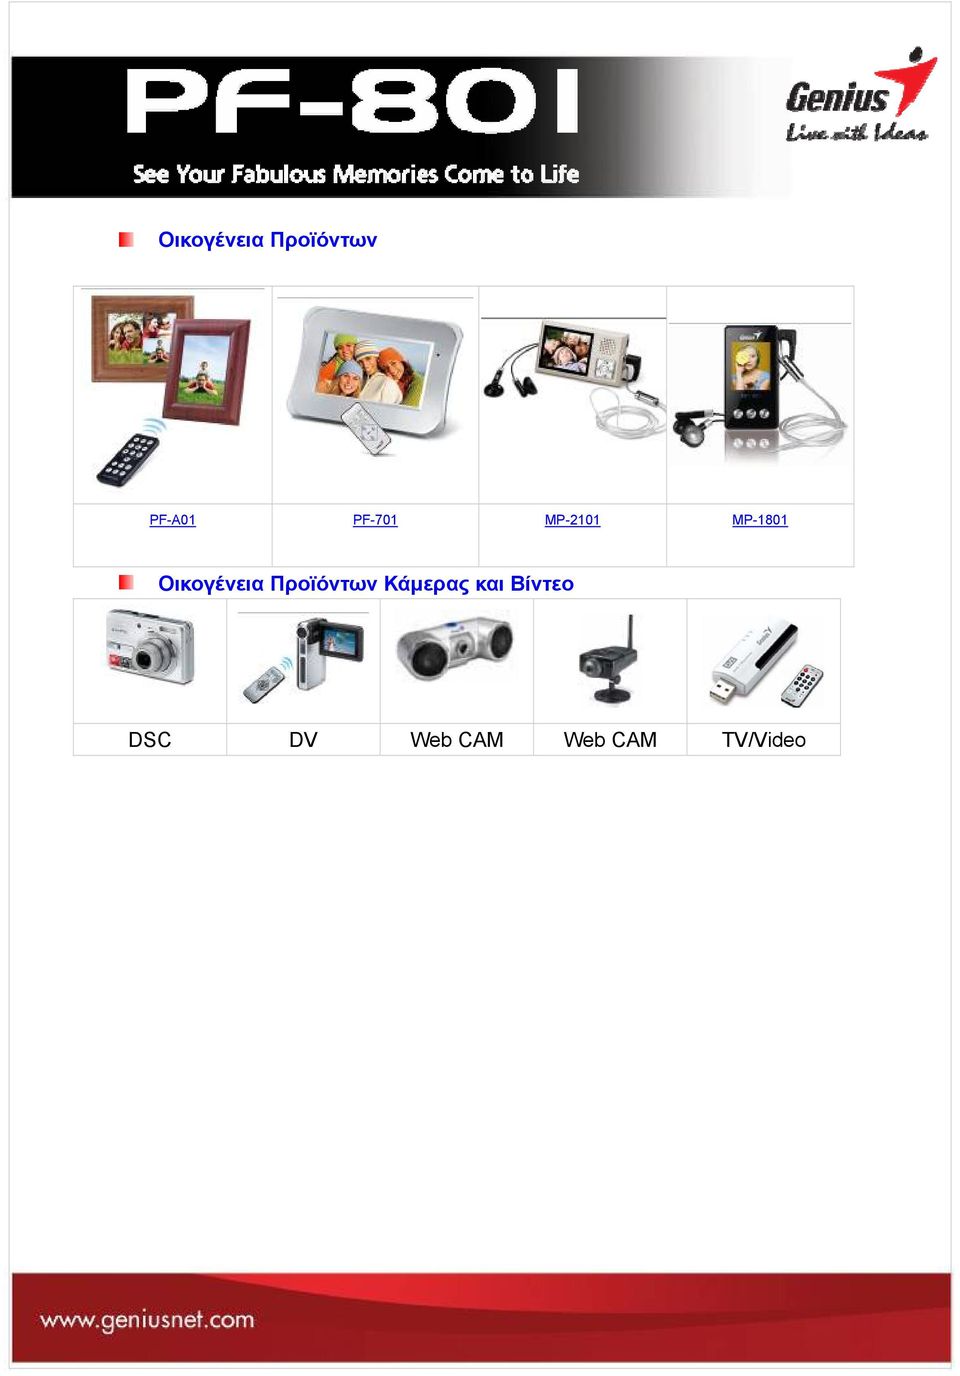 Προϊόντων Κάμερας και Βίντεο DSC